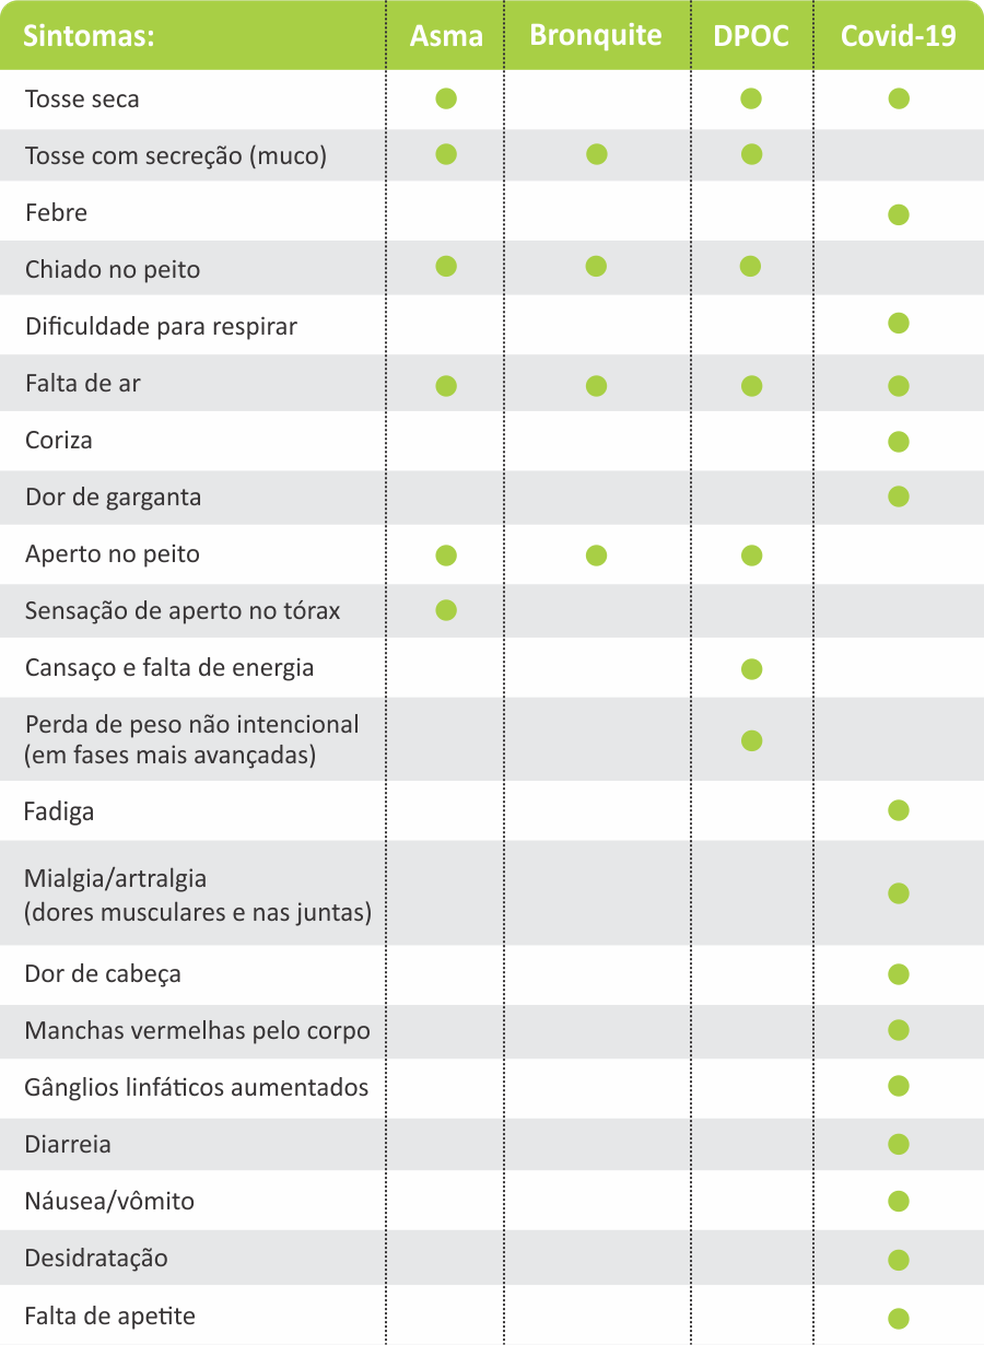 Tabela que diferencia asma x bronquite x DPCO x Covid  — Foto: Instituto de Assistência Médica ao Servidor Público Estadual de São Paulo (Iamspe)